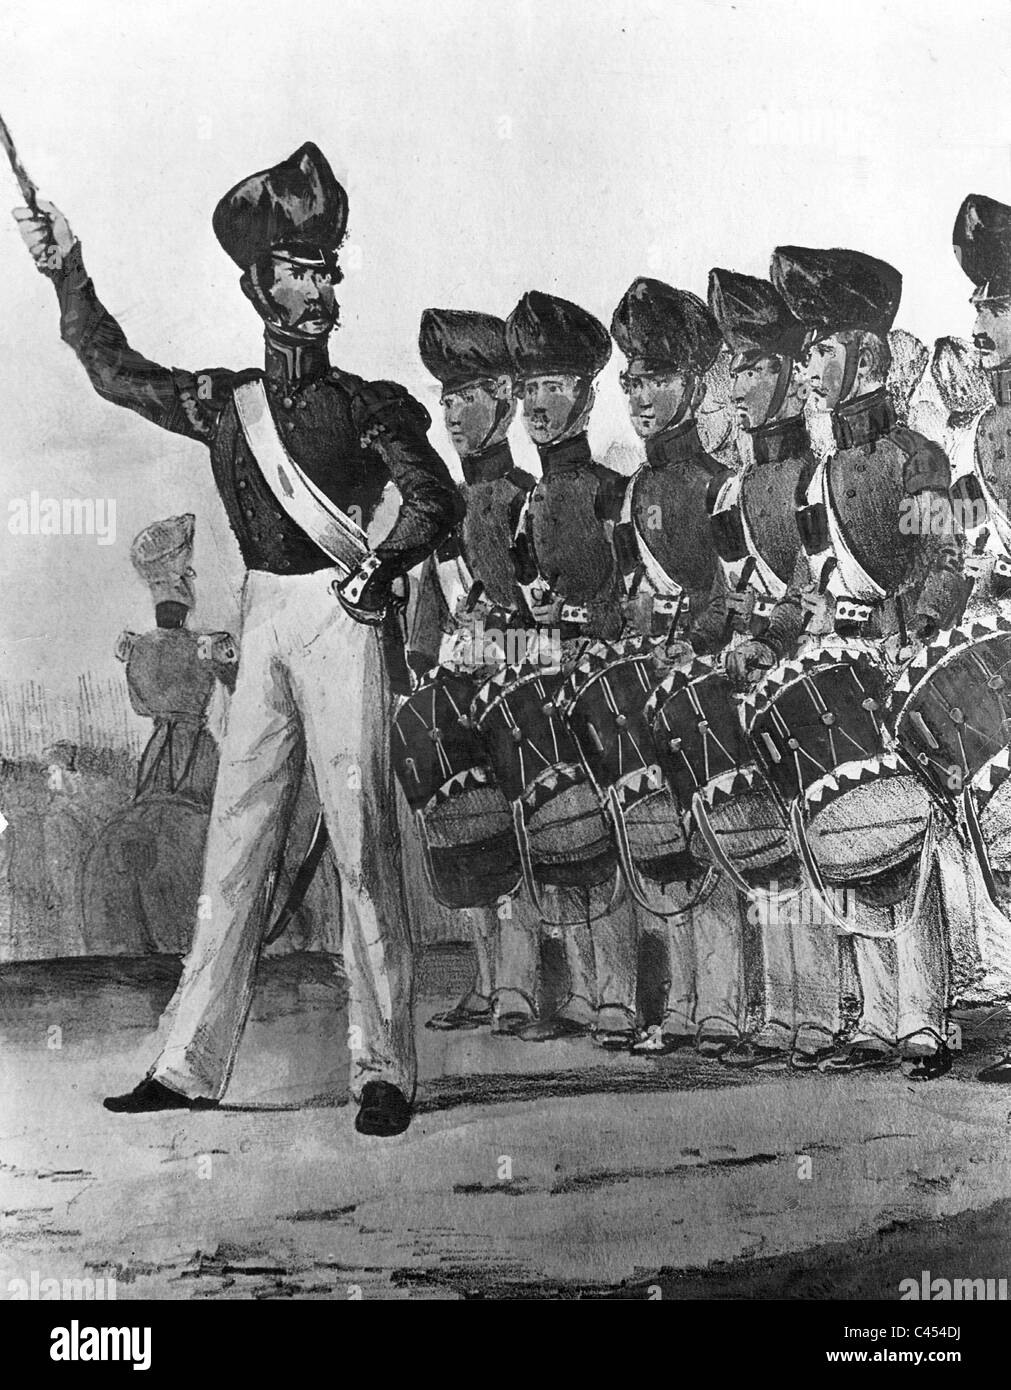 Cuerpo de música militar prusiano, 1850 Foto de stock